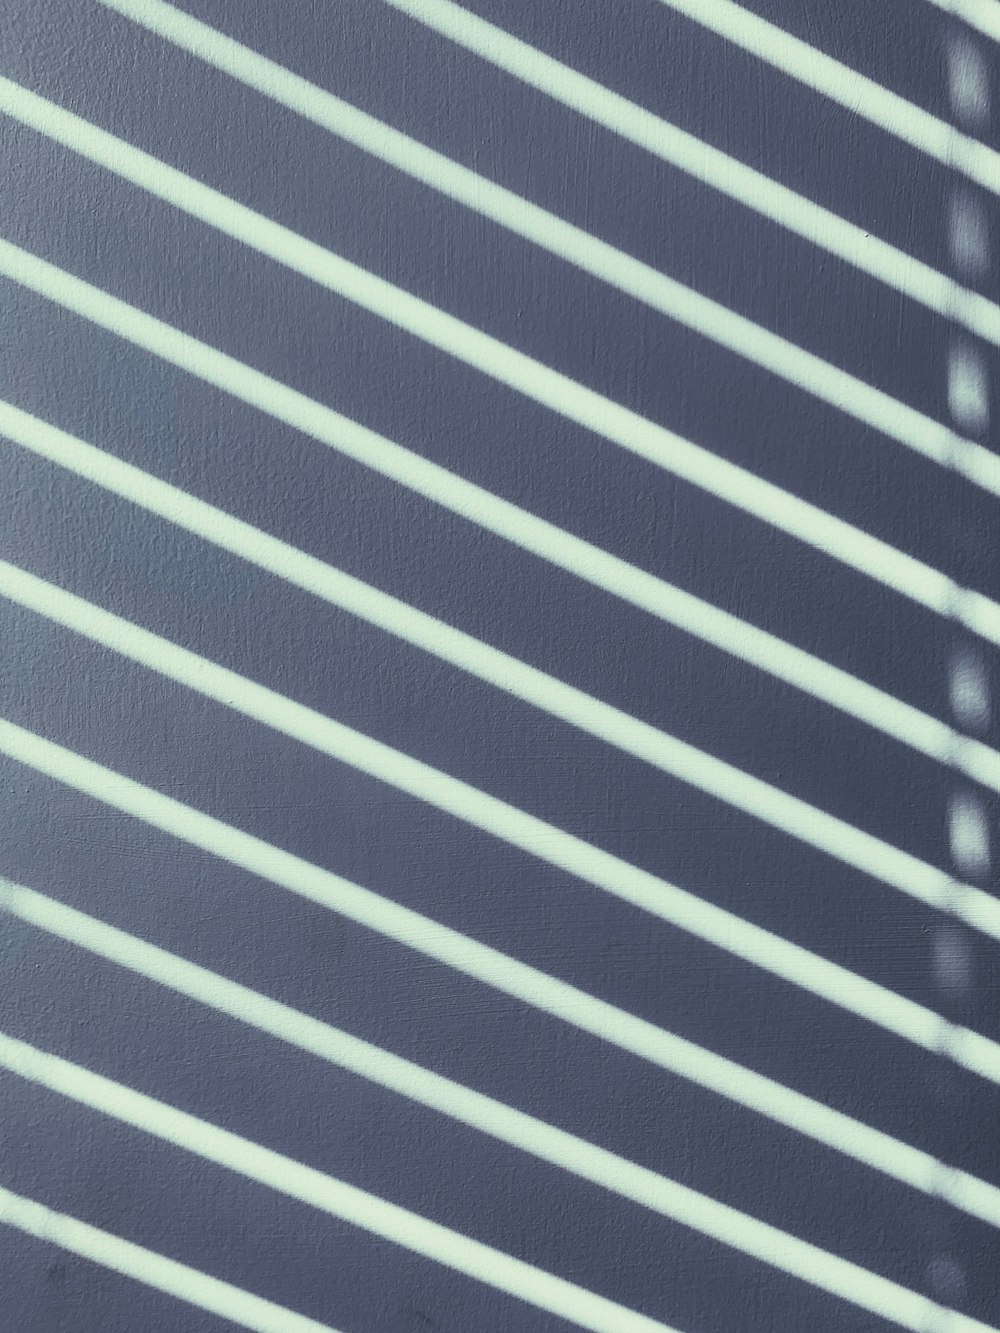 ein Schwarz-Weiß-Foto eines Fensters mit Jalousien